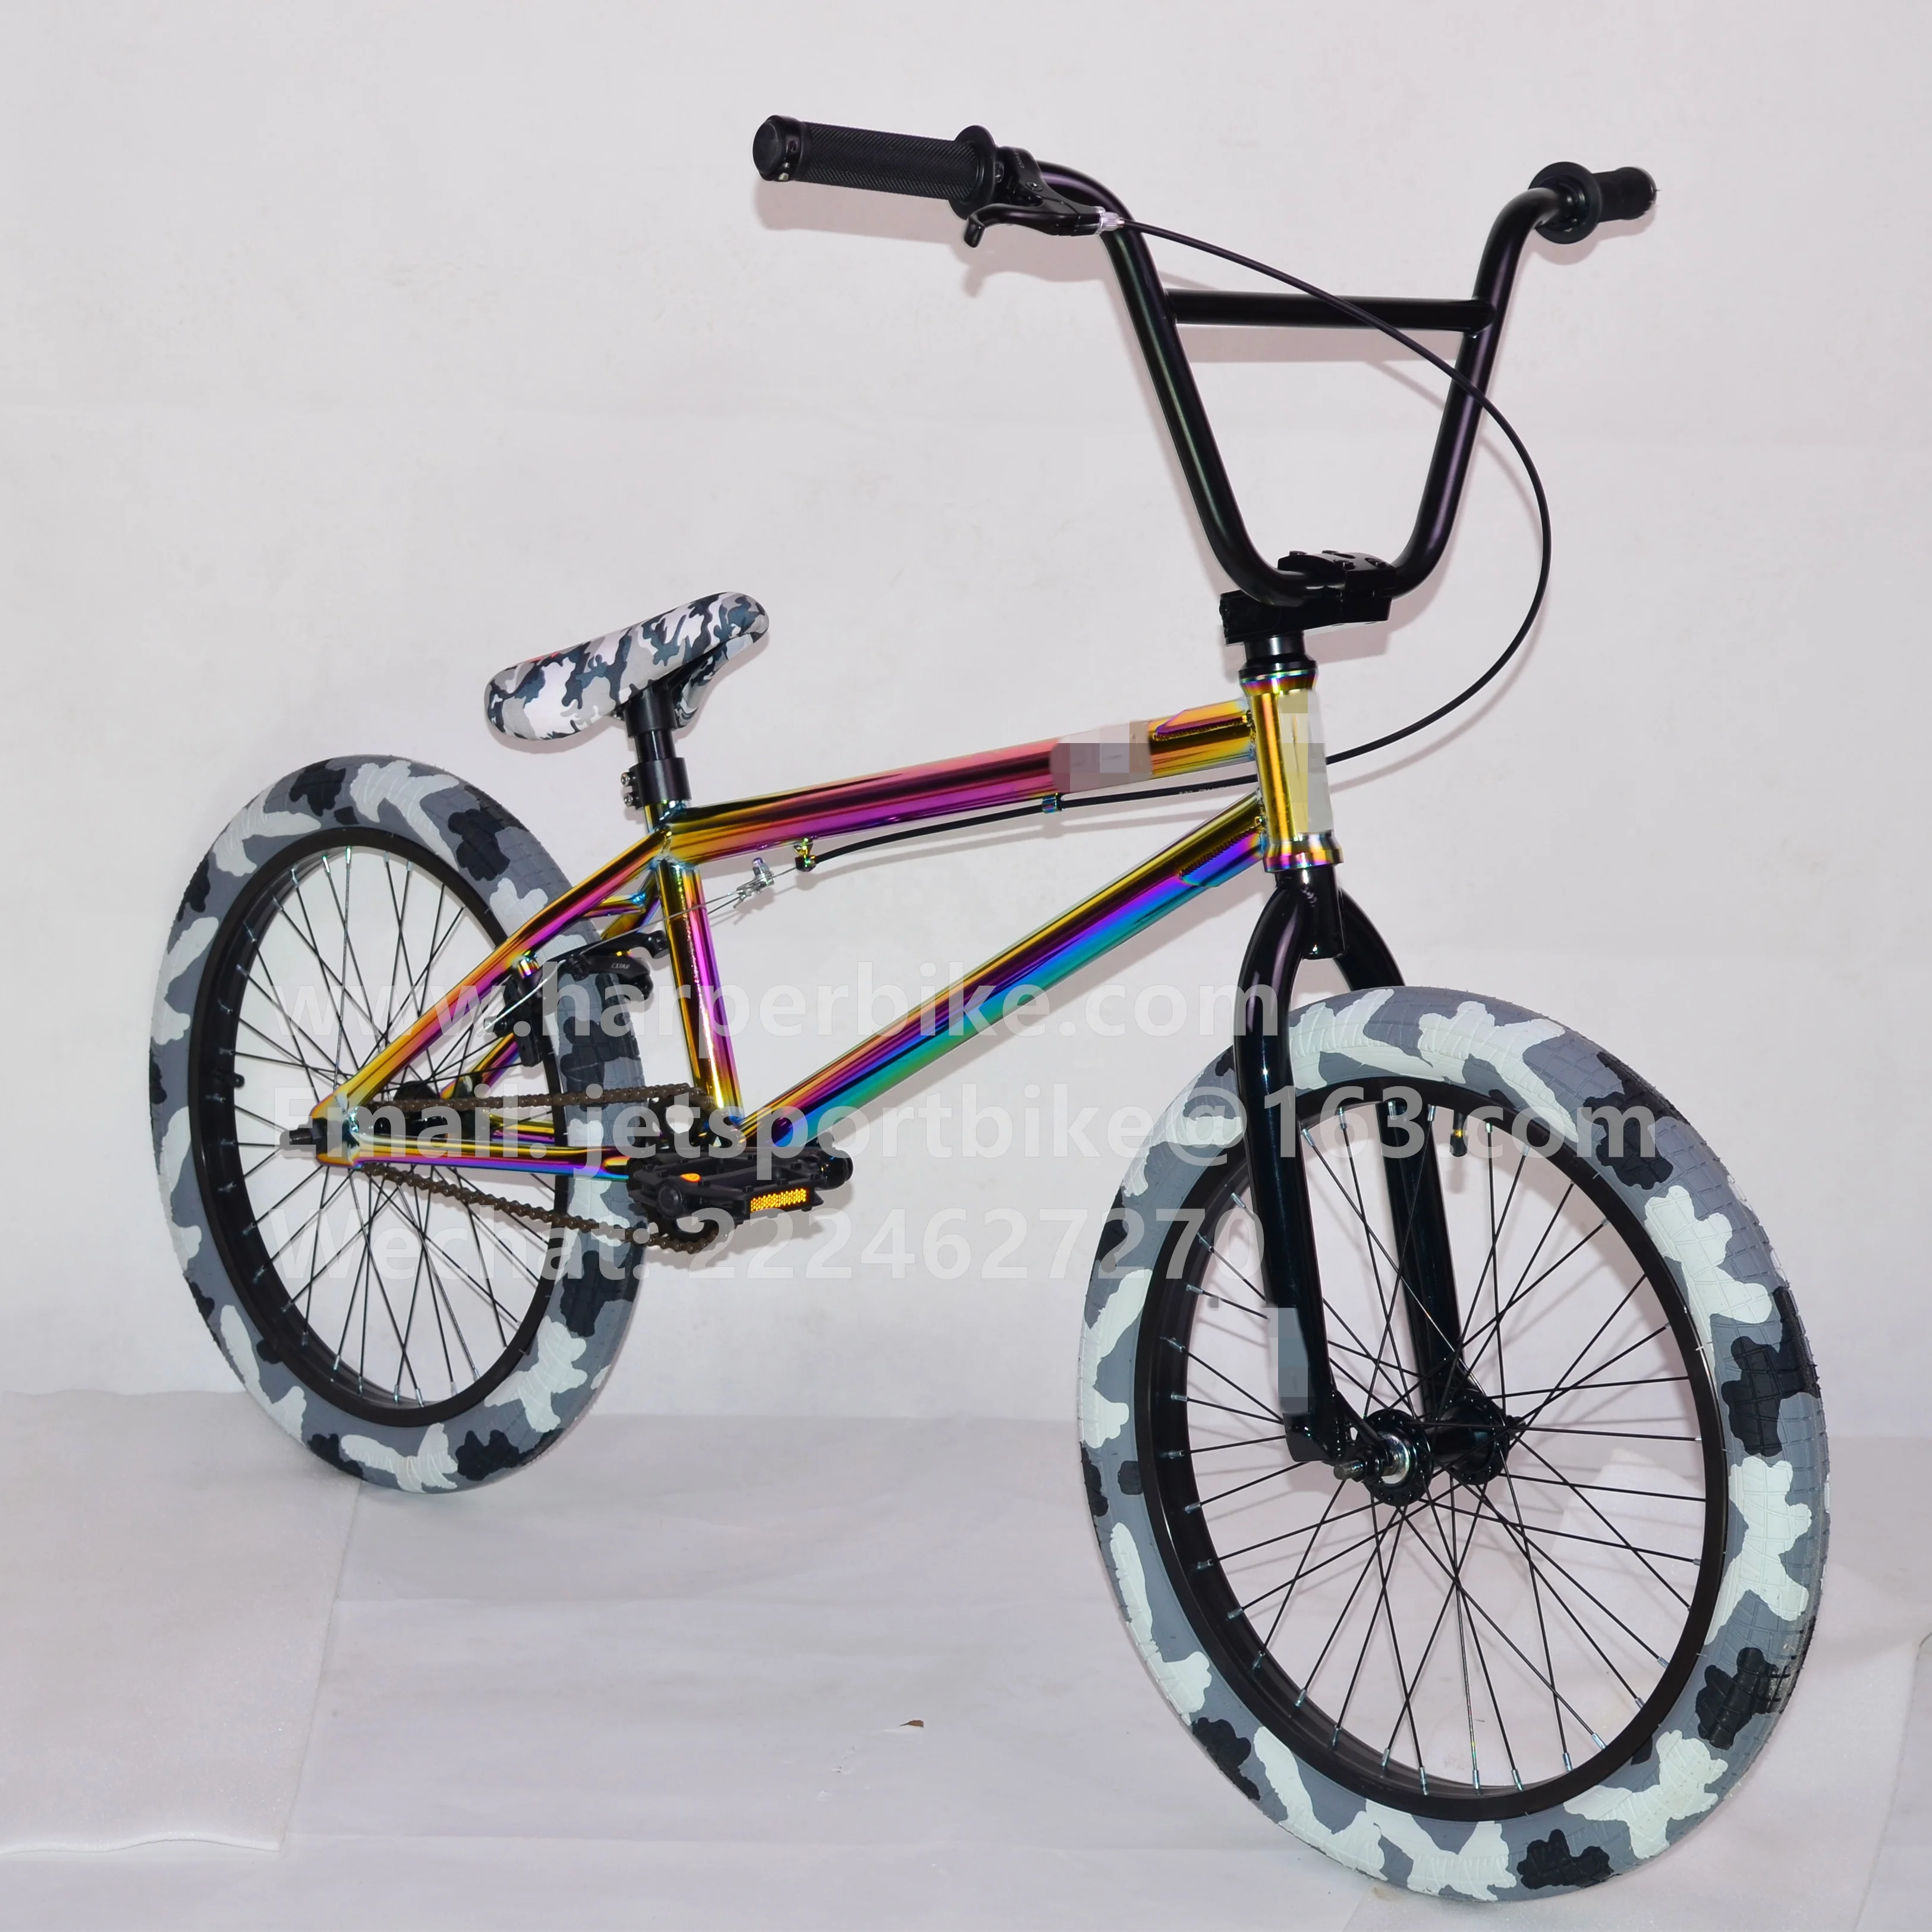 original bmx bikes for sale